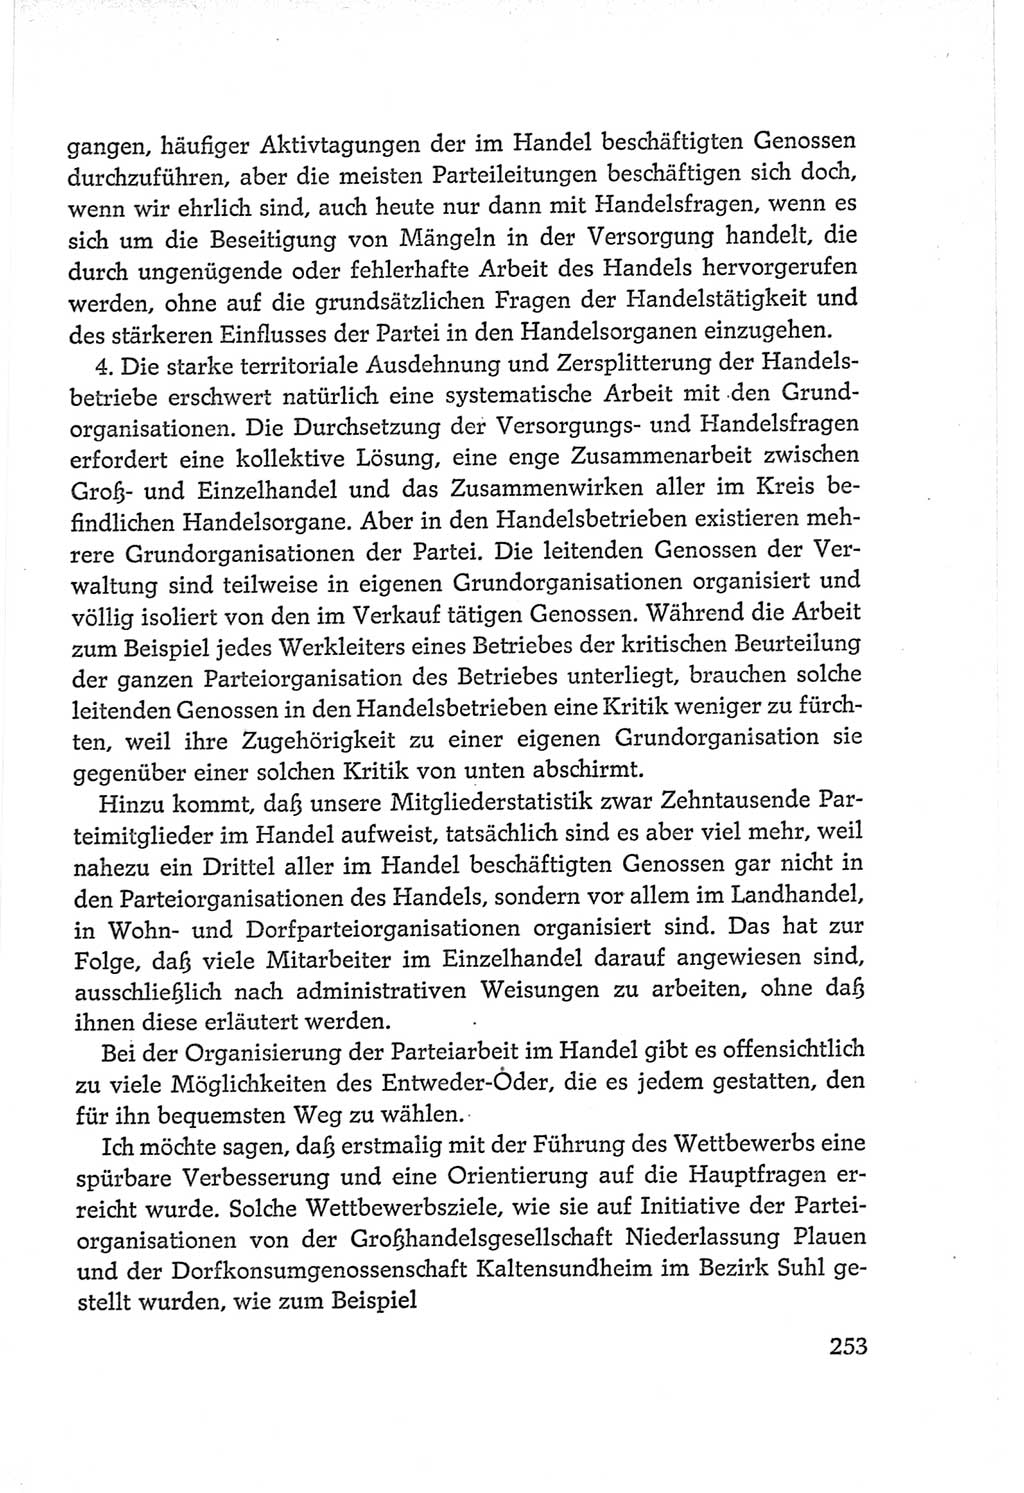 Protokoll der Verhandlungen des Ⅵ. Parteitages der Sozialistischen Einheitspartei Deutschlands (SED) [Deutsche Demokratische Republik (DDR)] 1963, Band Ⅱ, Seite 253 (Prot. Verh. Ⅵ. PT SED DDR 1963, Bd. Ⅱ, S. 253)